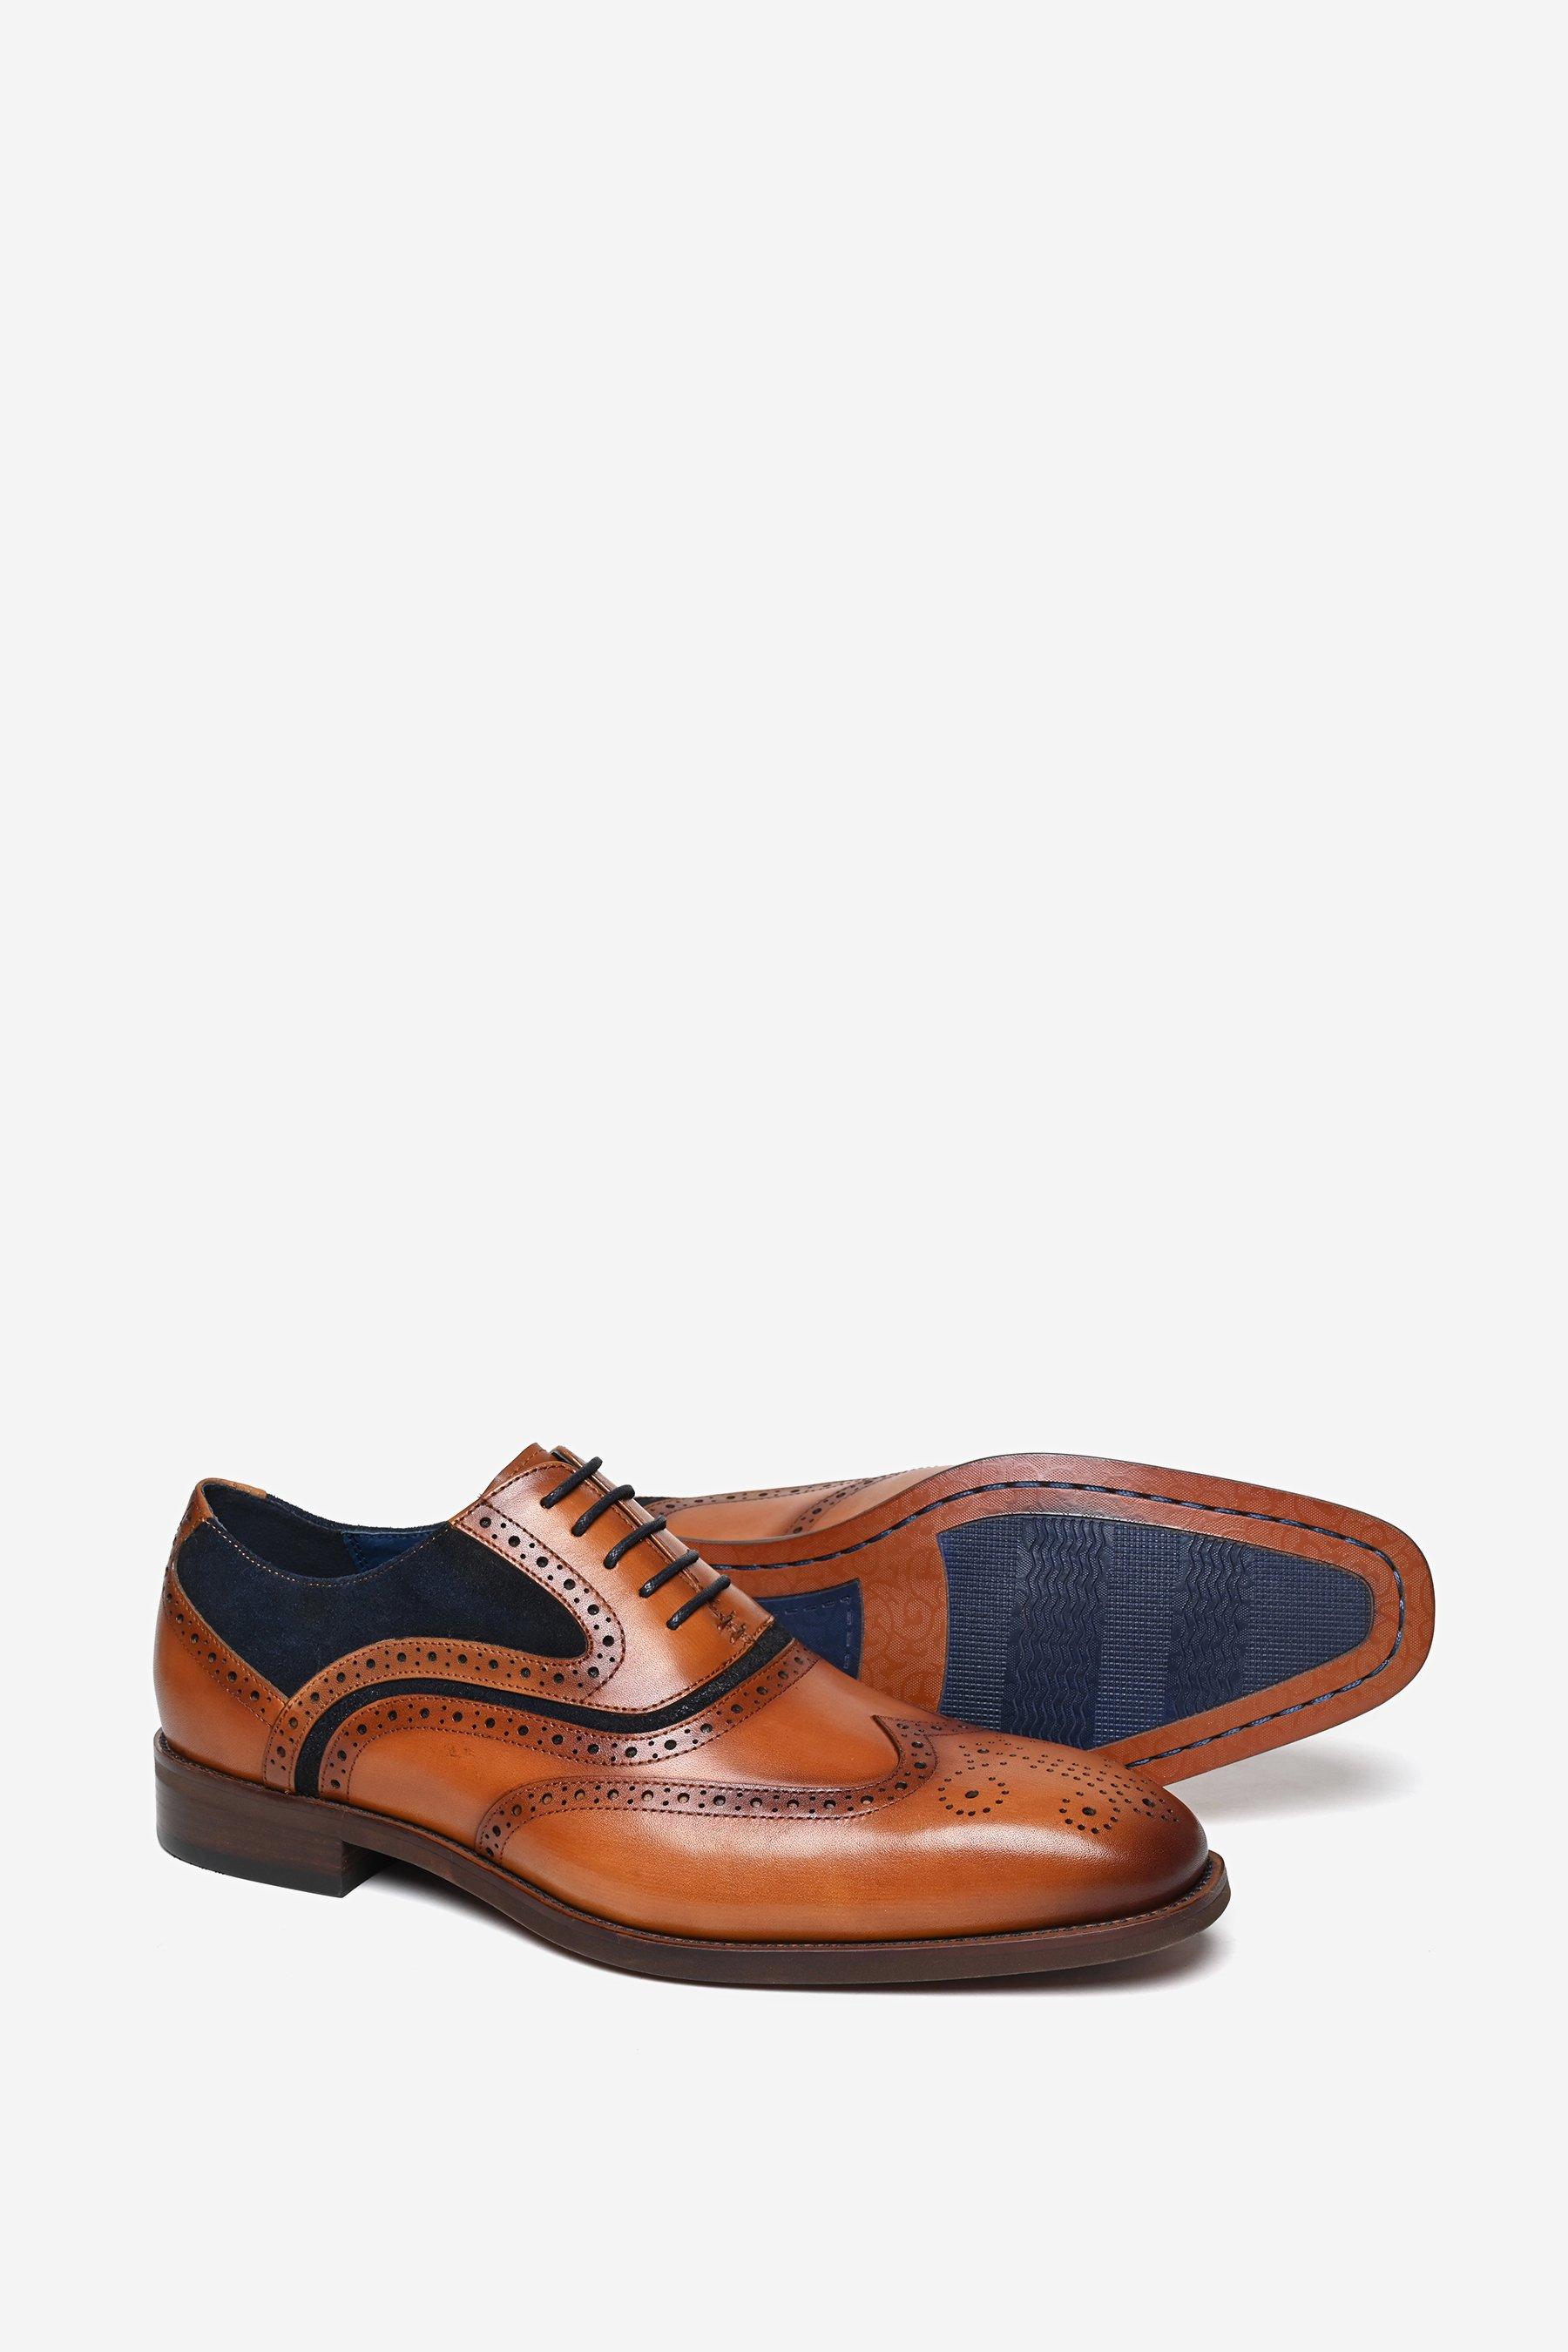 Кожаные туфли-броги премиум-класса 'Falcon' Alexander Pace, коричневый